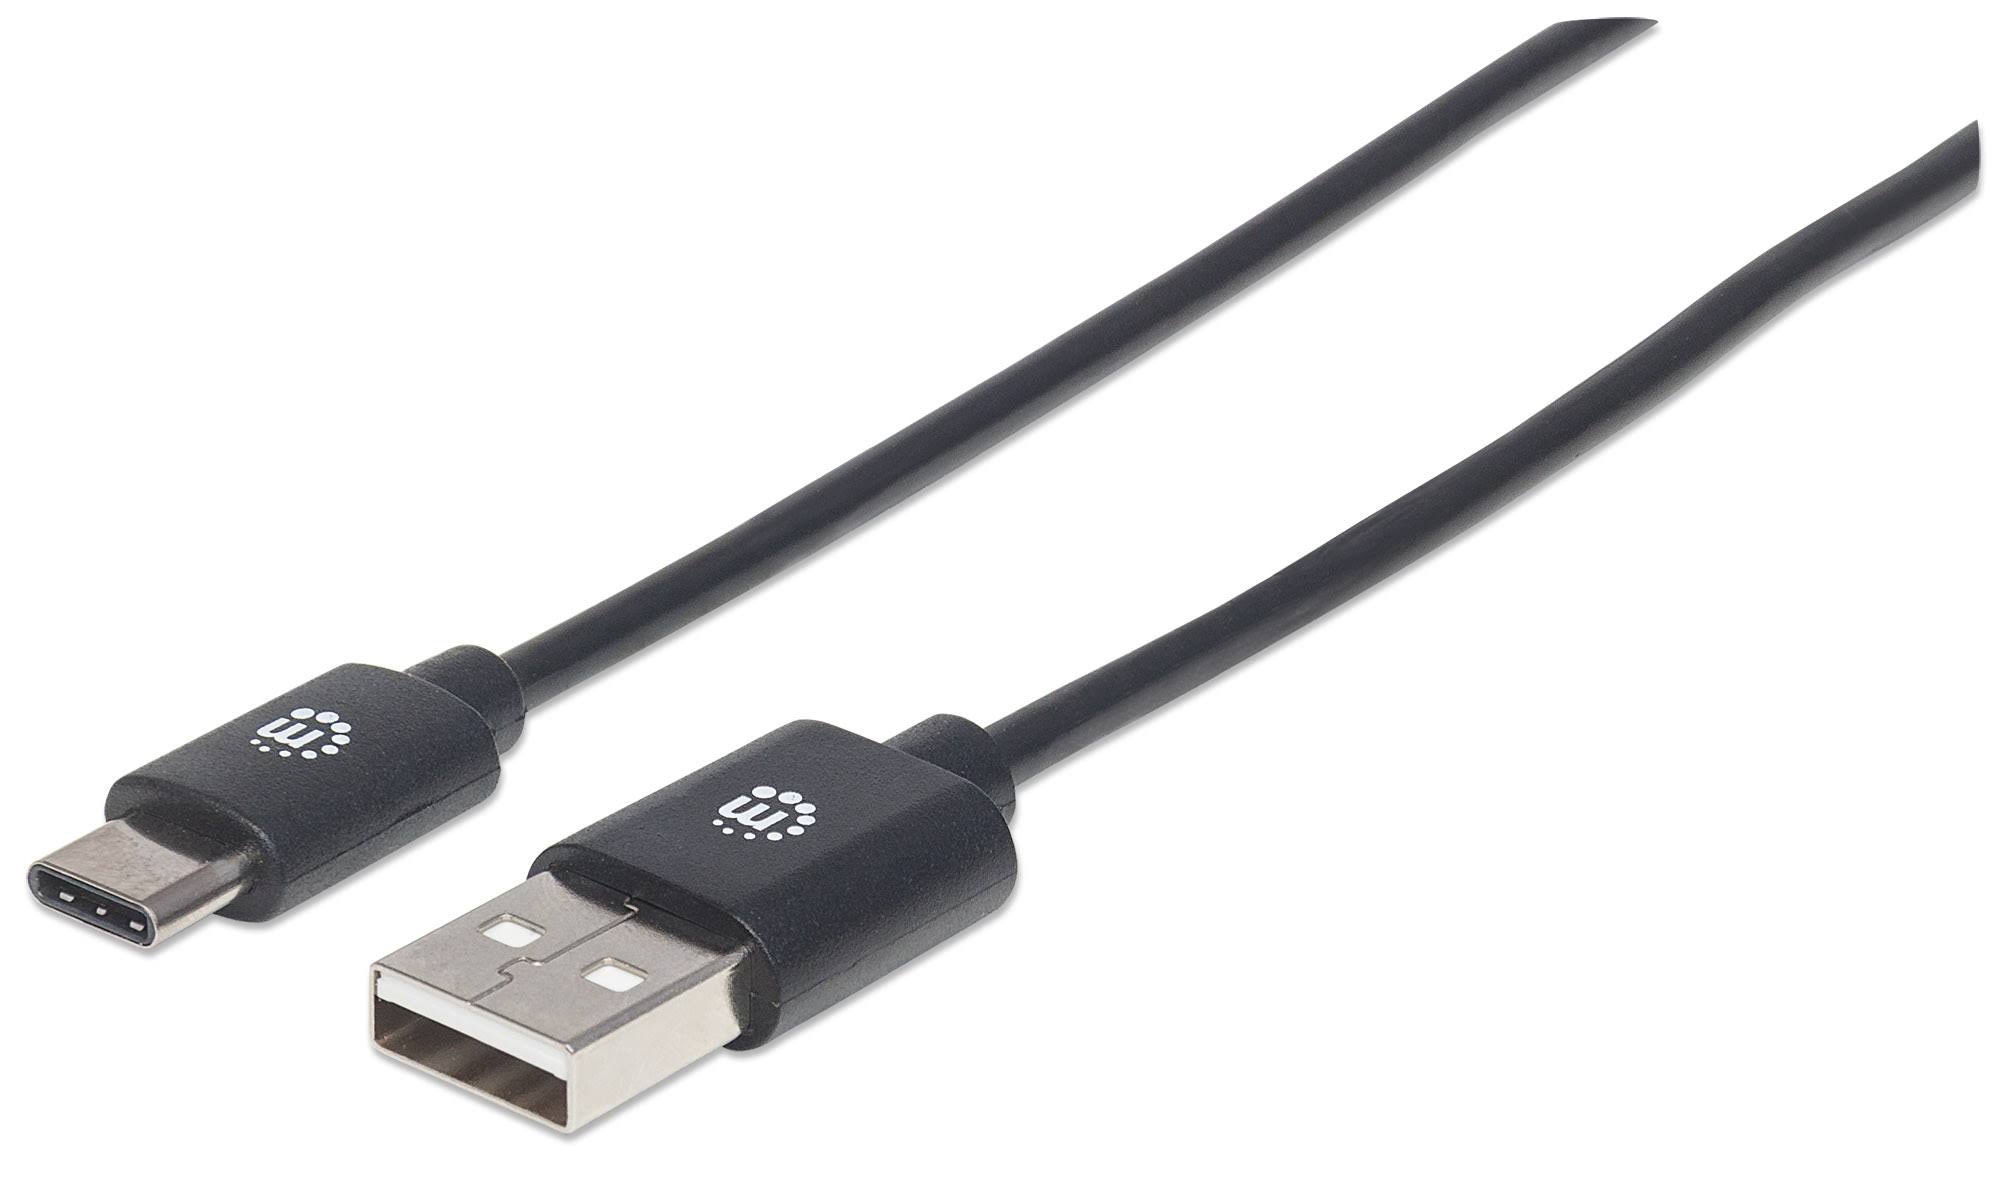 Manhattan Hi-Speed USB C Cable - 3'